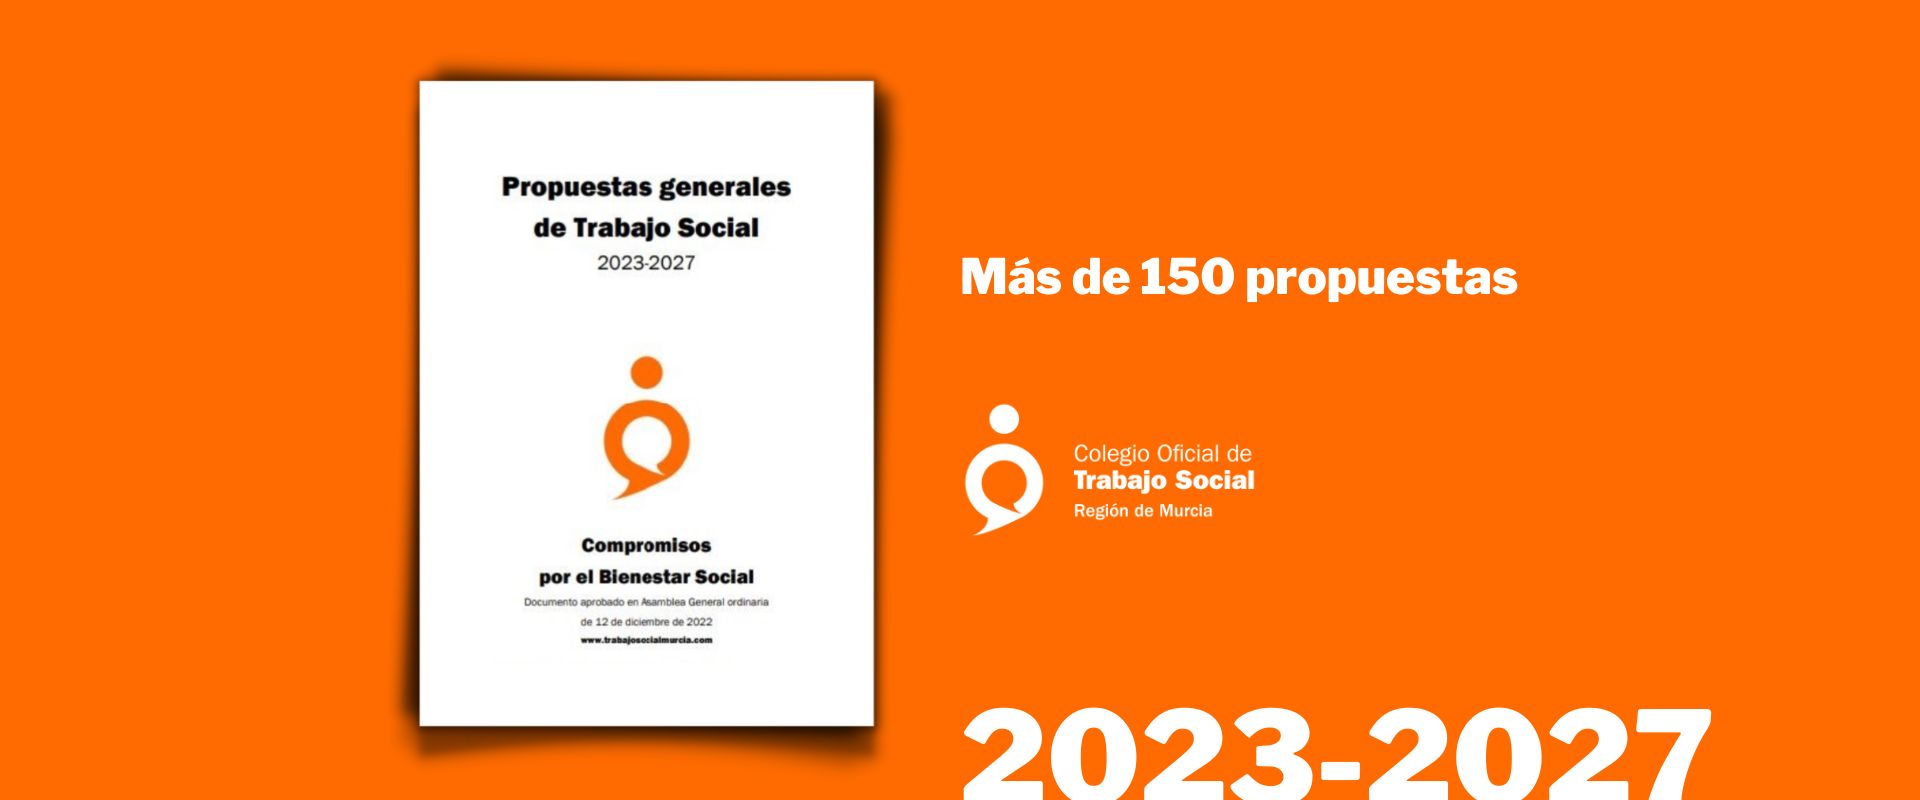 Propuestas generales de Trabajo Social: 2023-2027